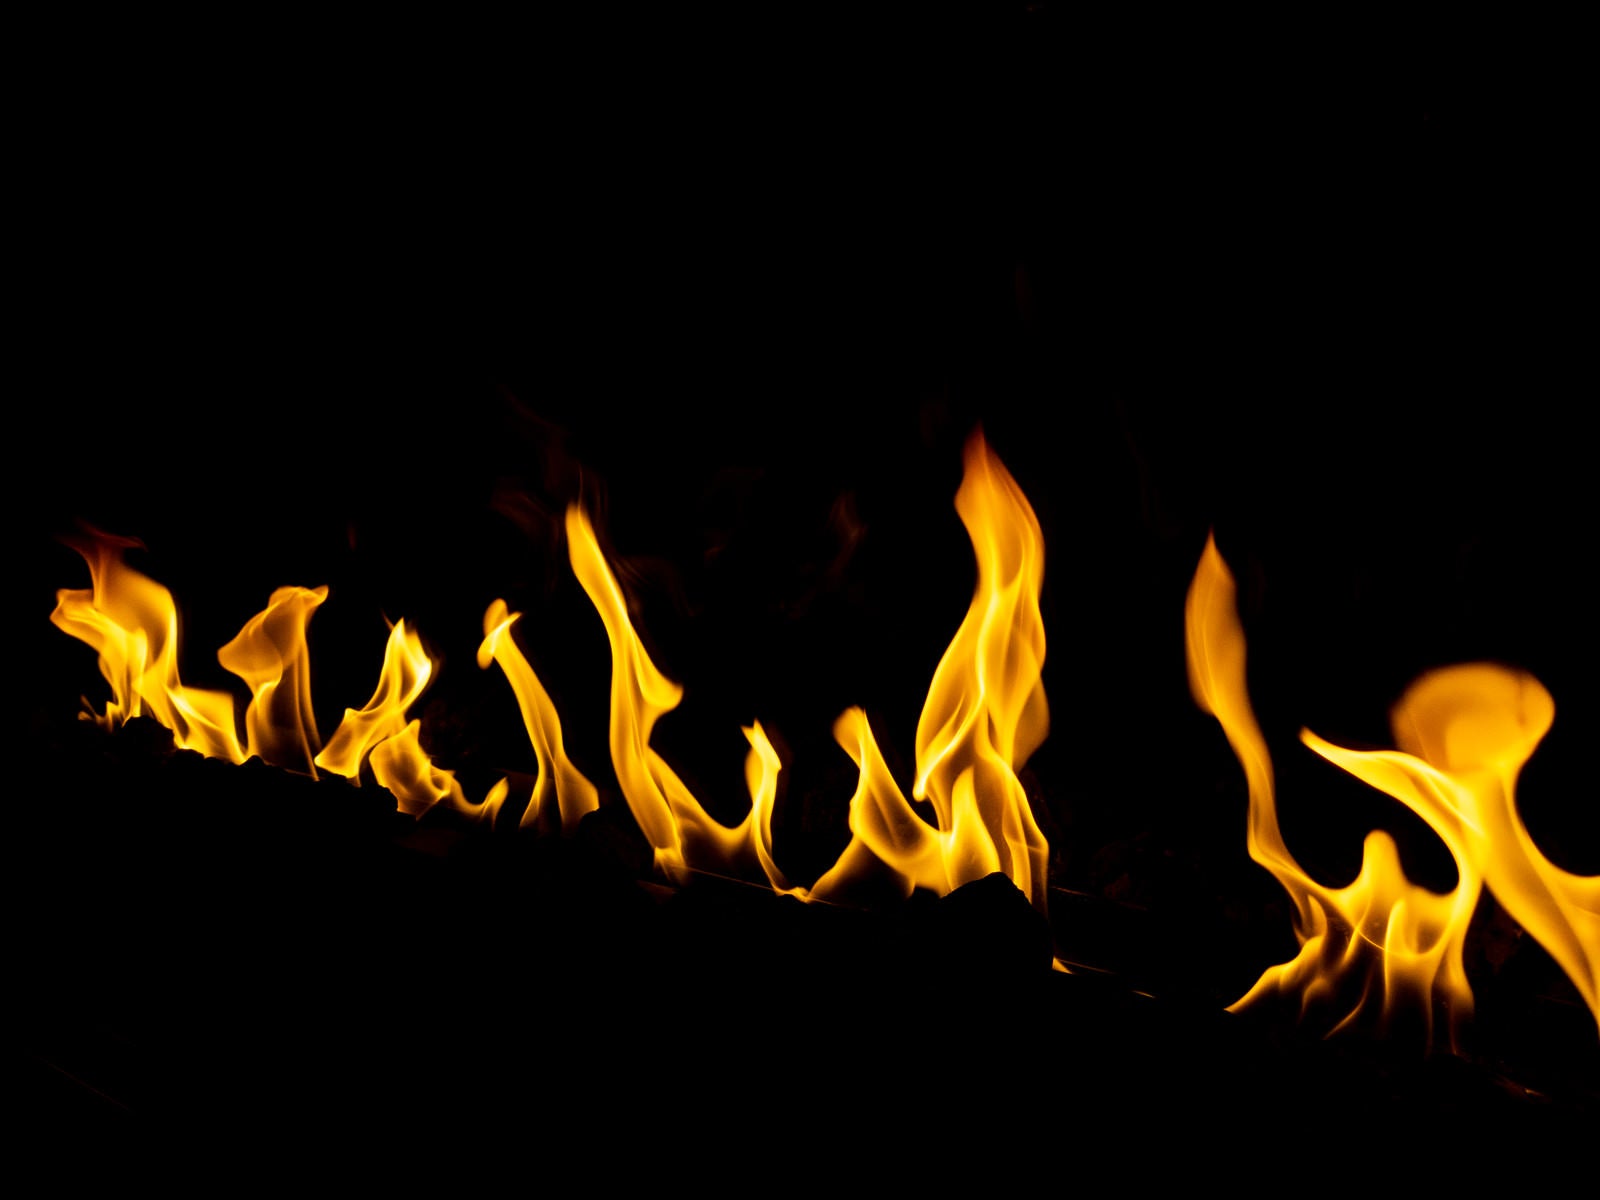 「メラメラと燃える炎」の写真